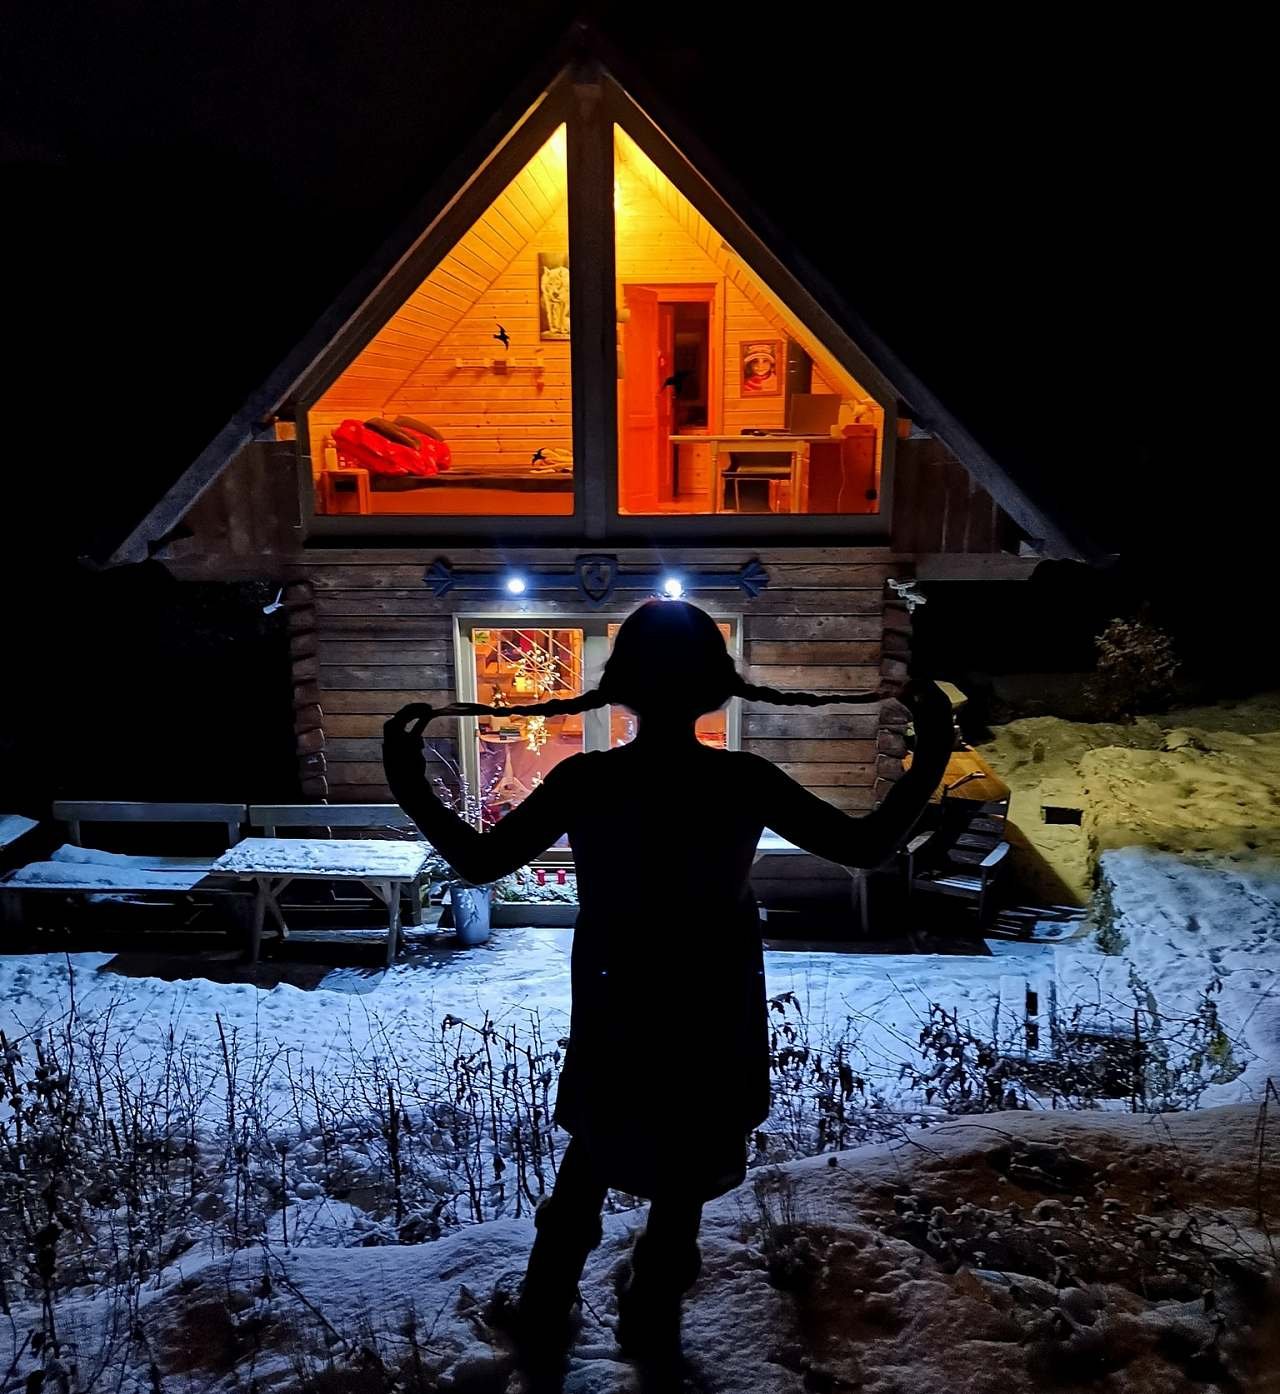 Cabana din busteni sub un tei, fotografie de noapte